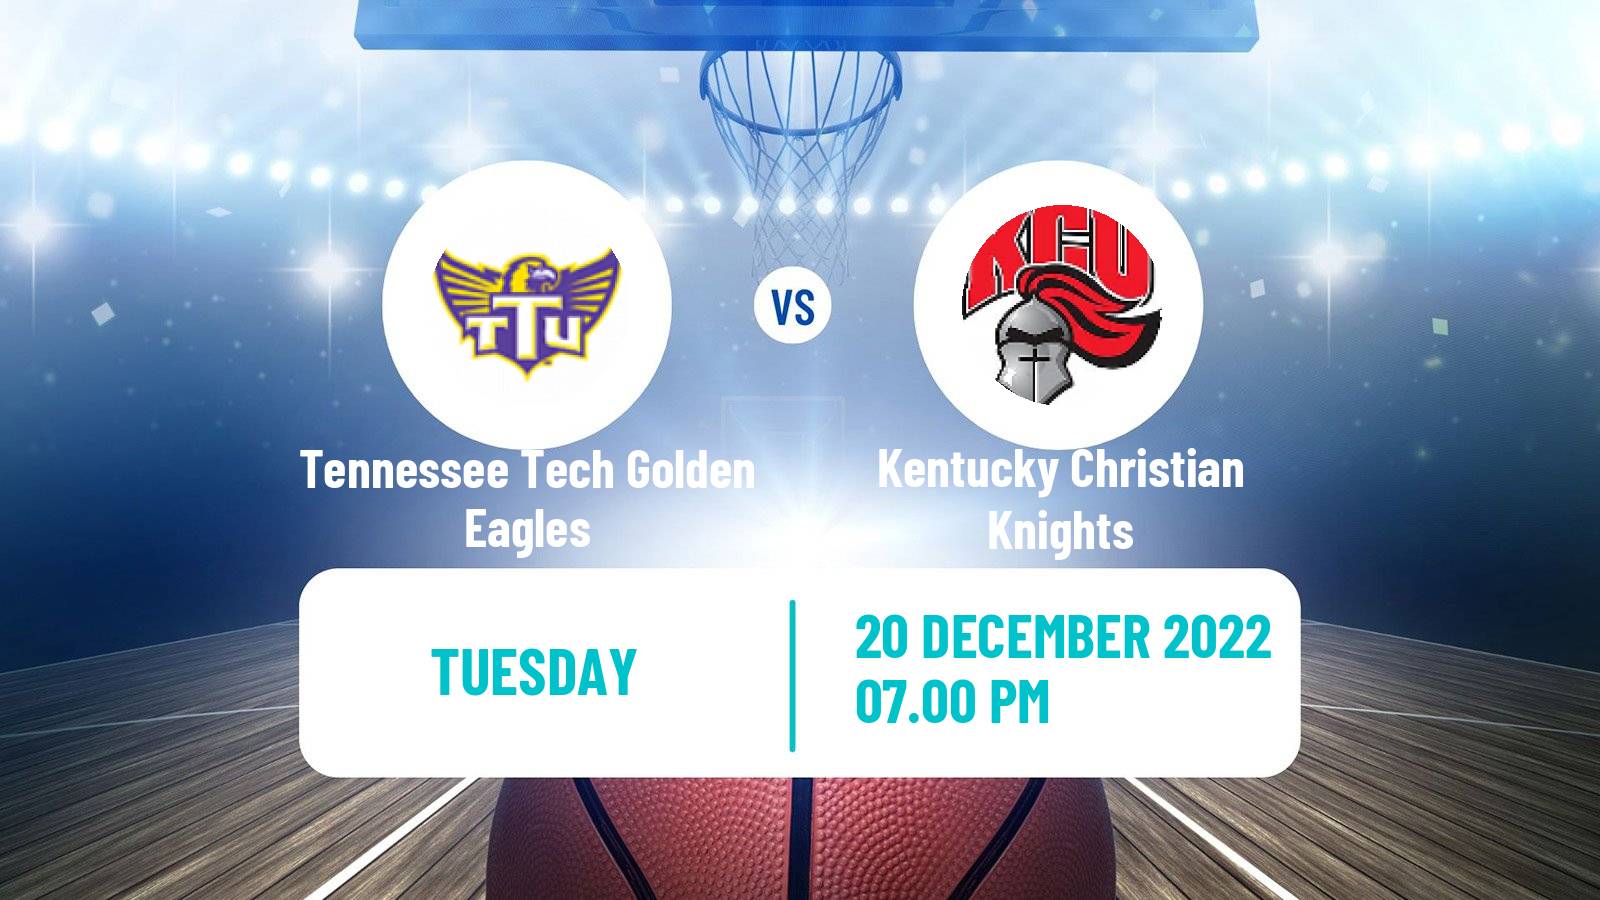 Basketball NCAA College Basketball Tennessee Tech Golden Eagles - Kentucky Christian Knights